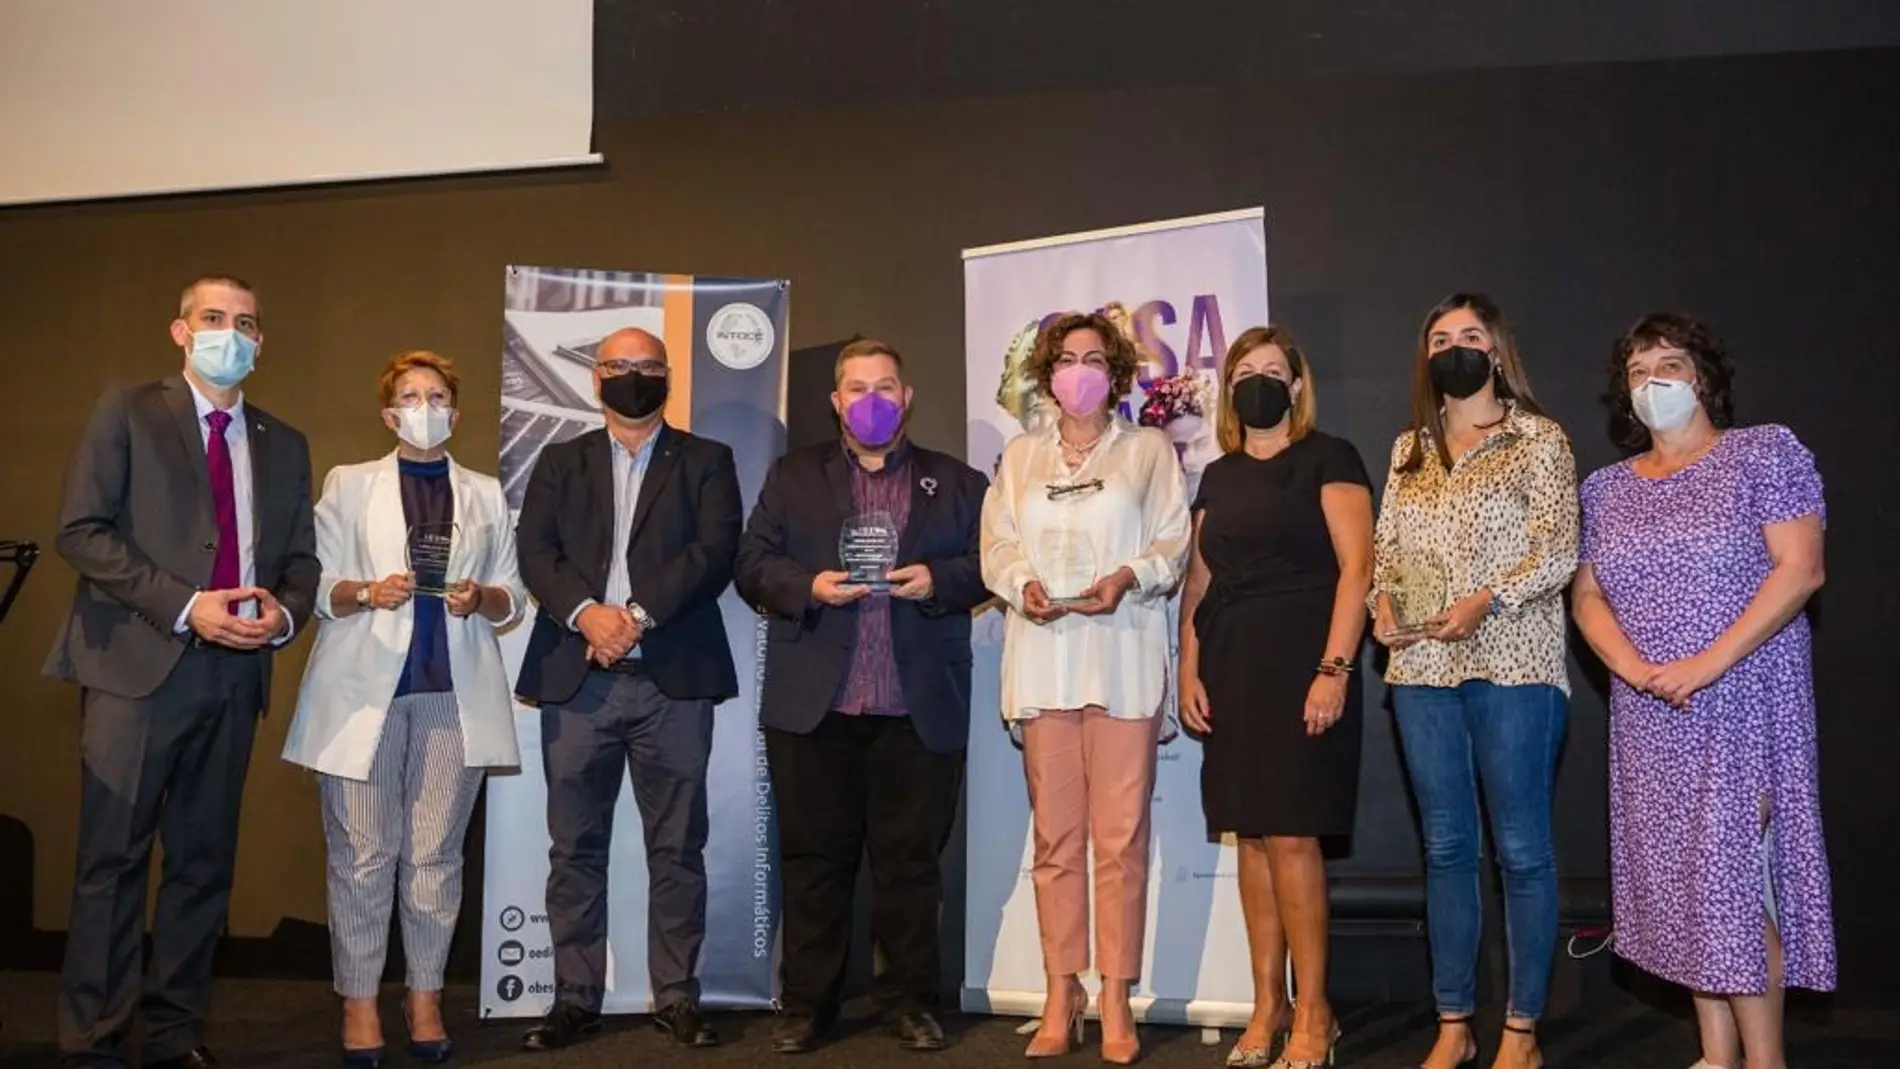 Delitos Informáticos premia al Ayuntamiento de Bigastro por su labor contra la violencia de género digital 